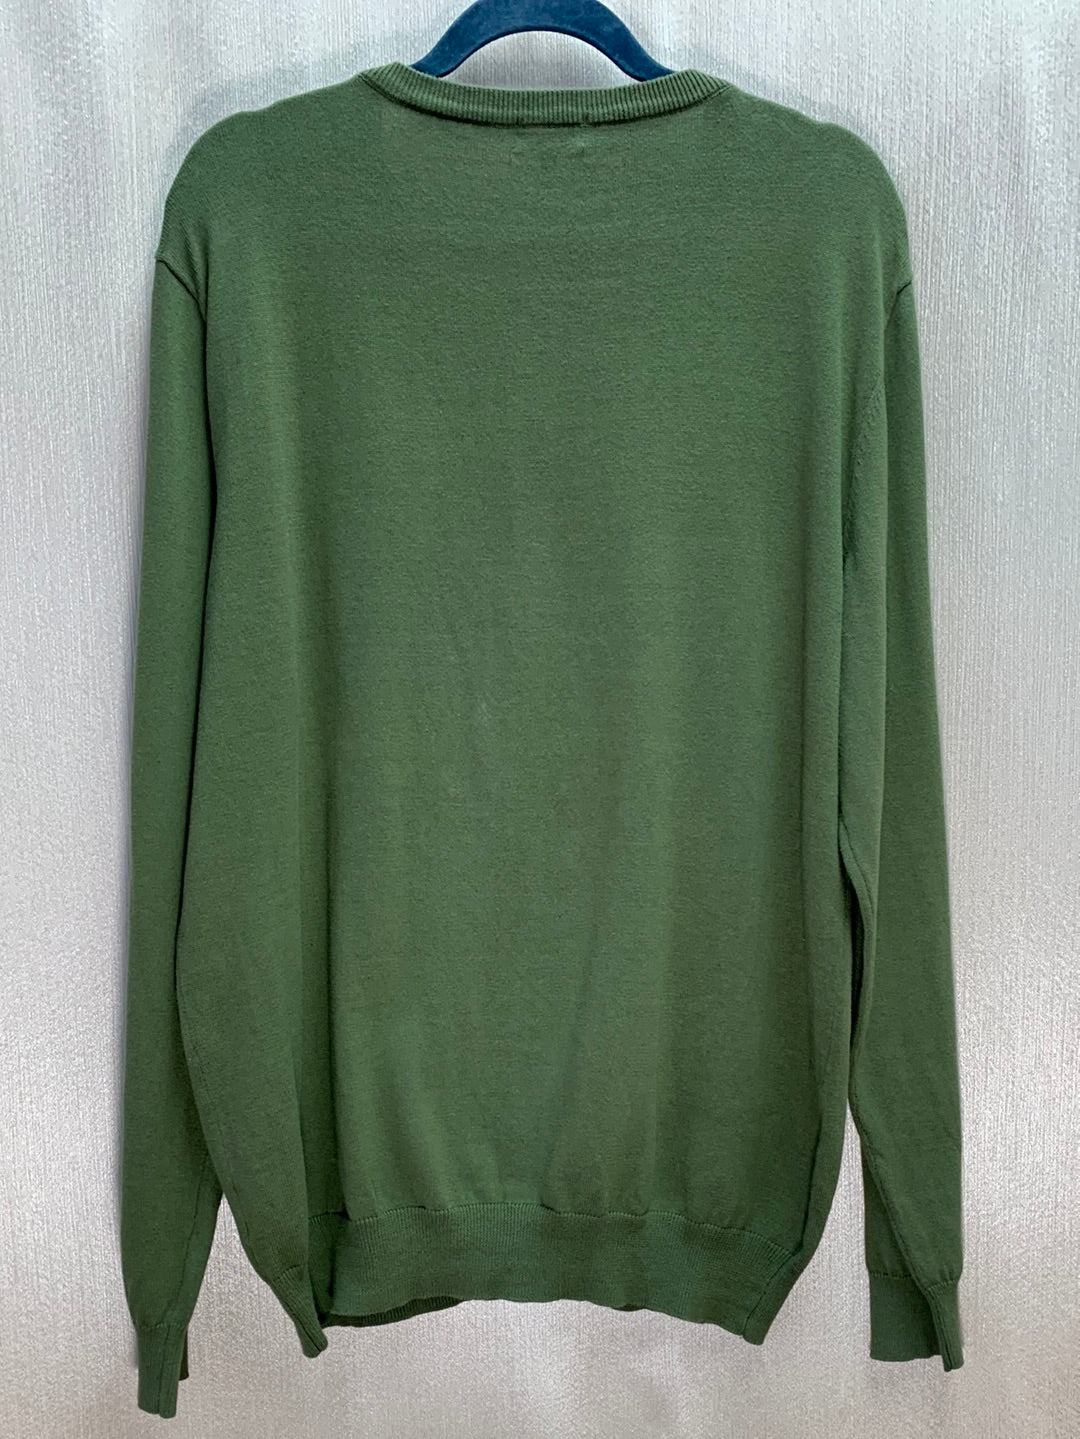 QUALFORT olive green 100% Cotton Lightweight V-Neck Sweater - L